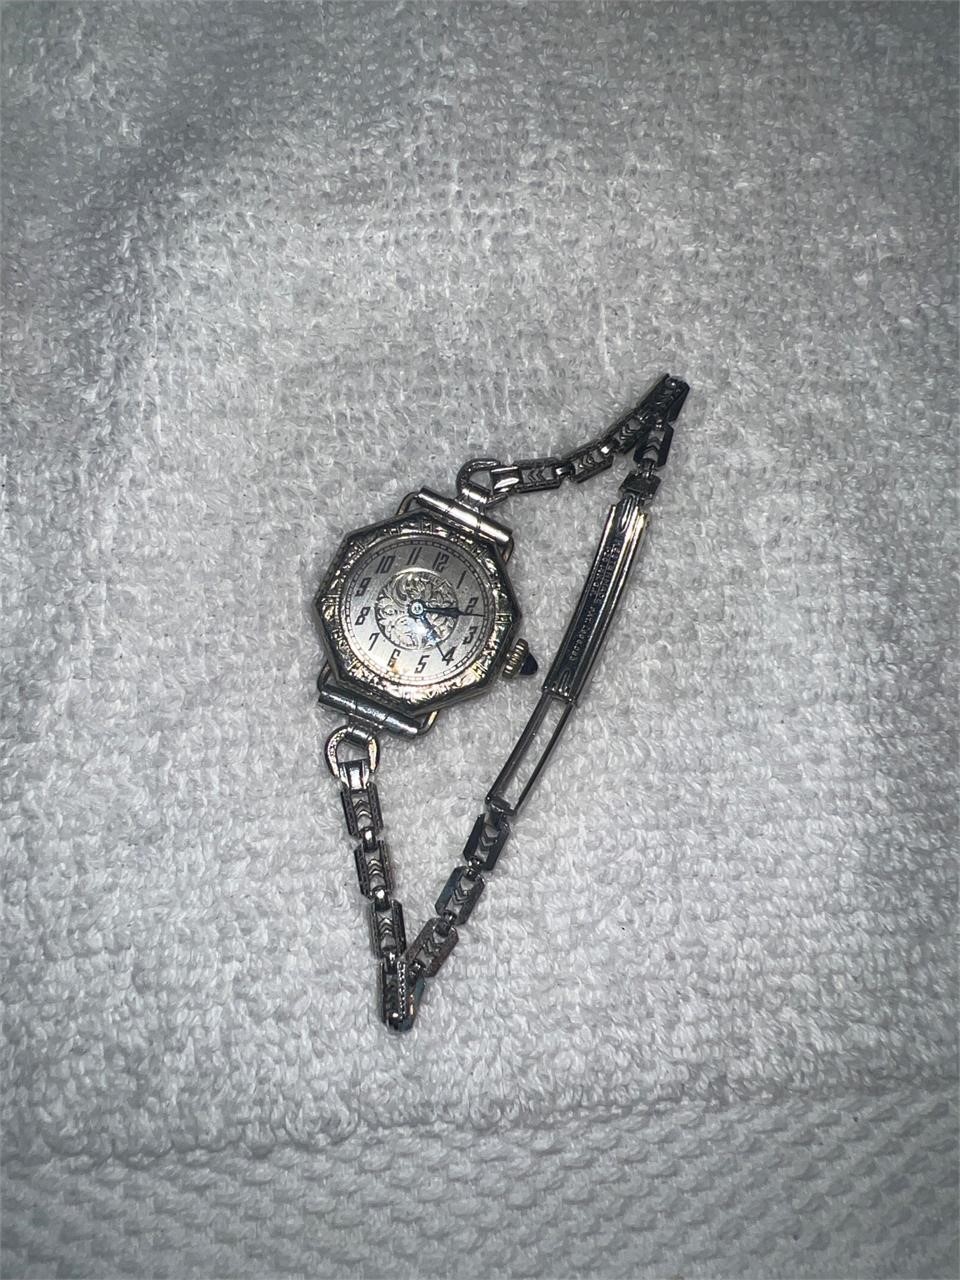 Kestenmade women’s vintage watch